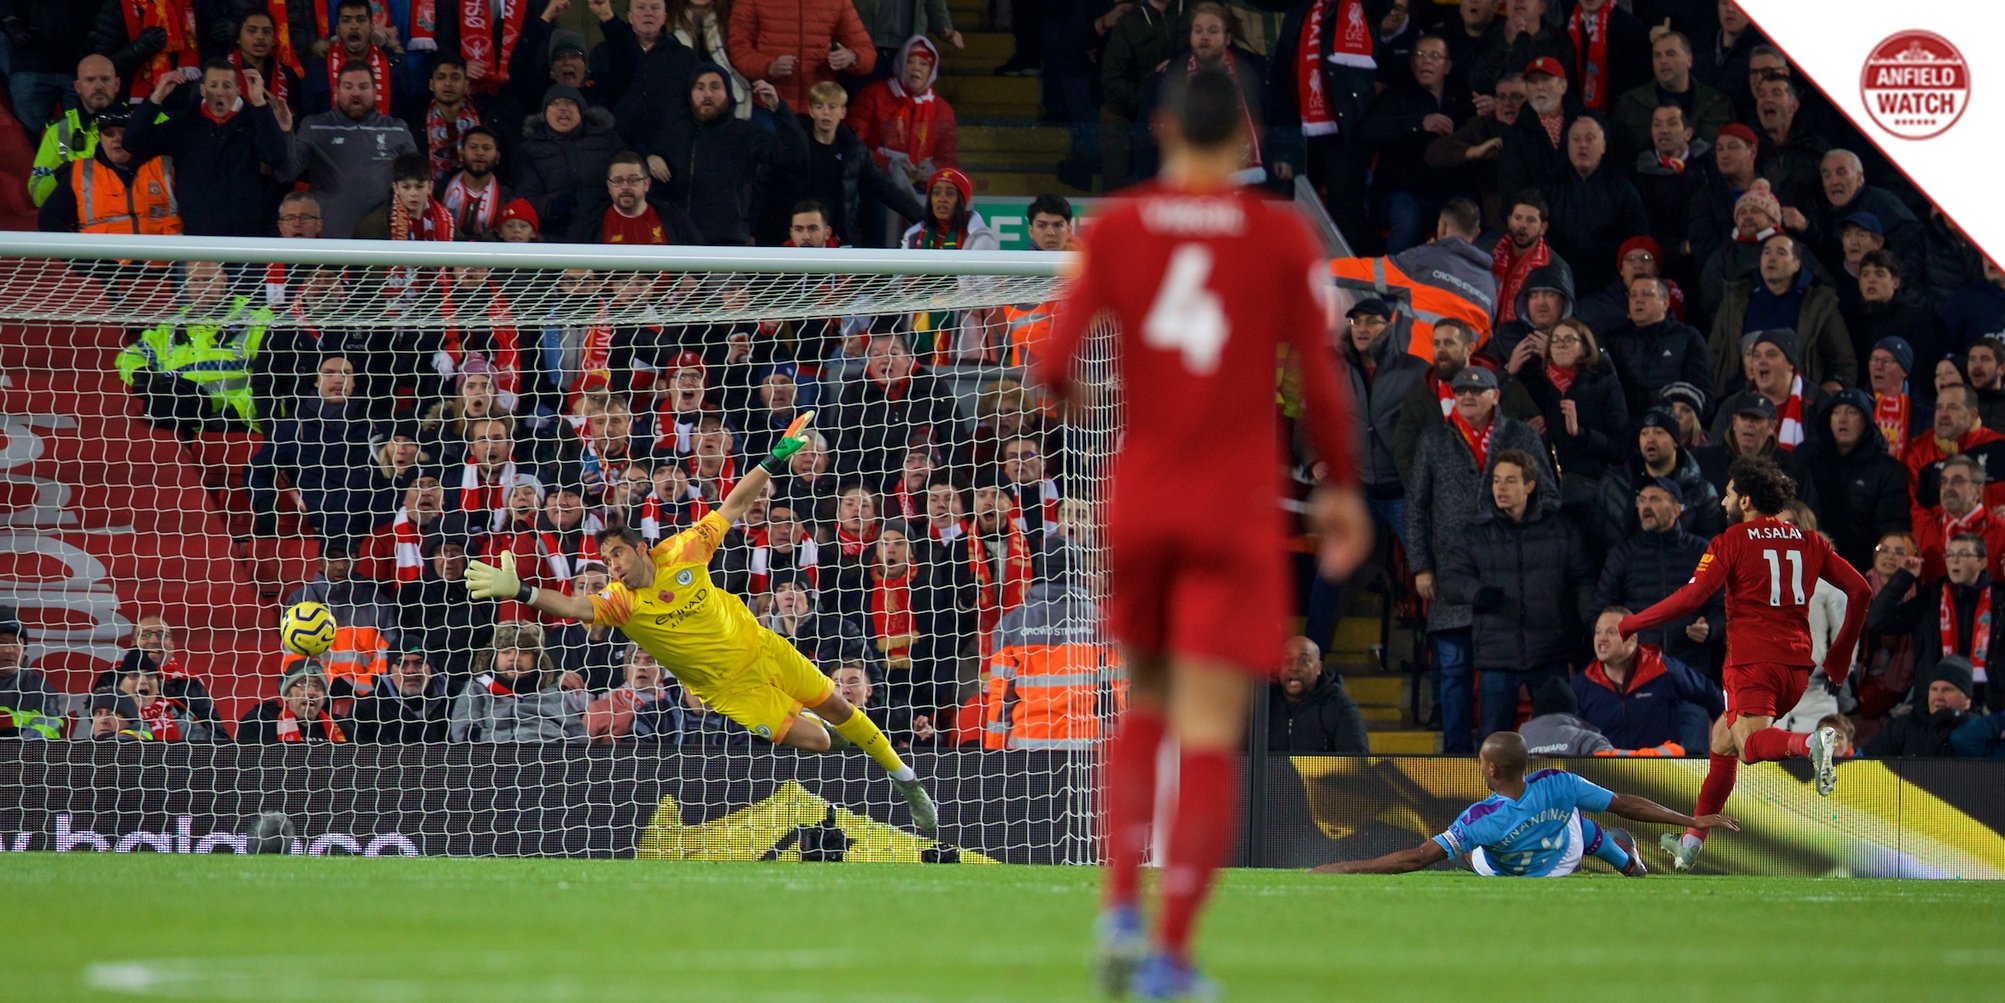 TRỰC TIẾP Liverpool 2-0 Man City: Mo Salah nới rộng cách biệt (H1) - Bóng Đá